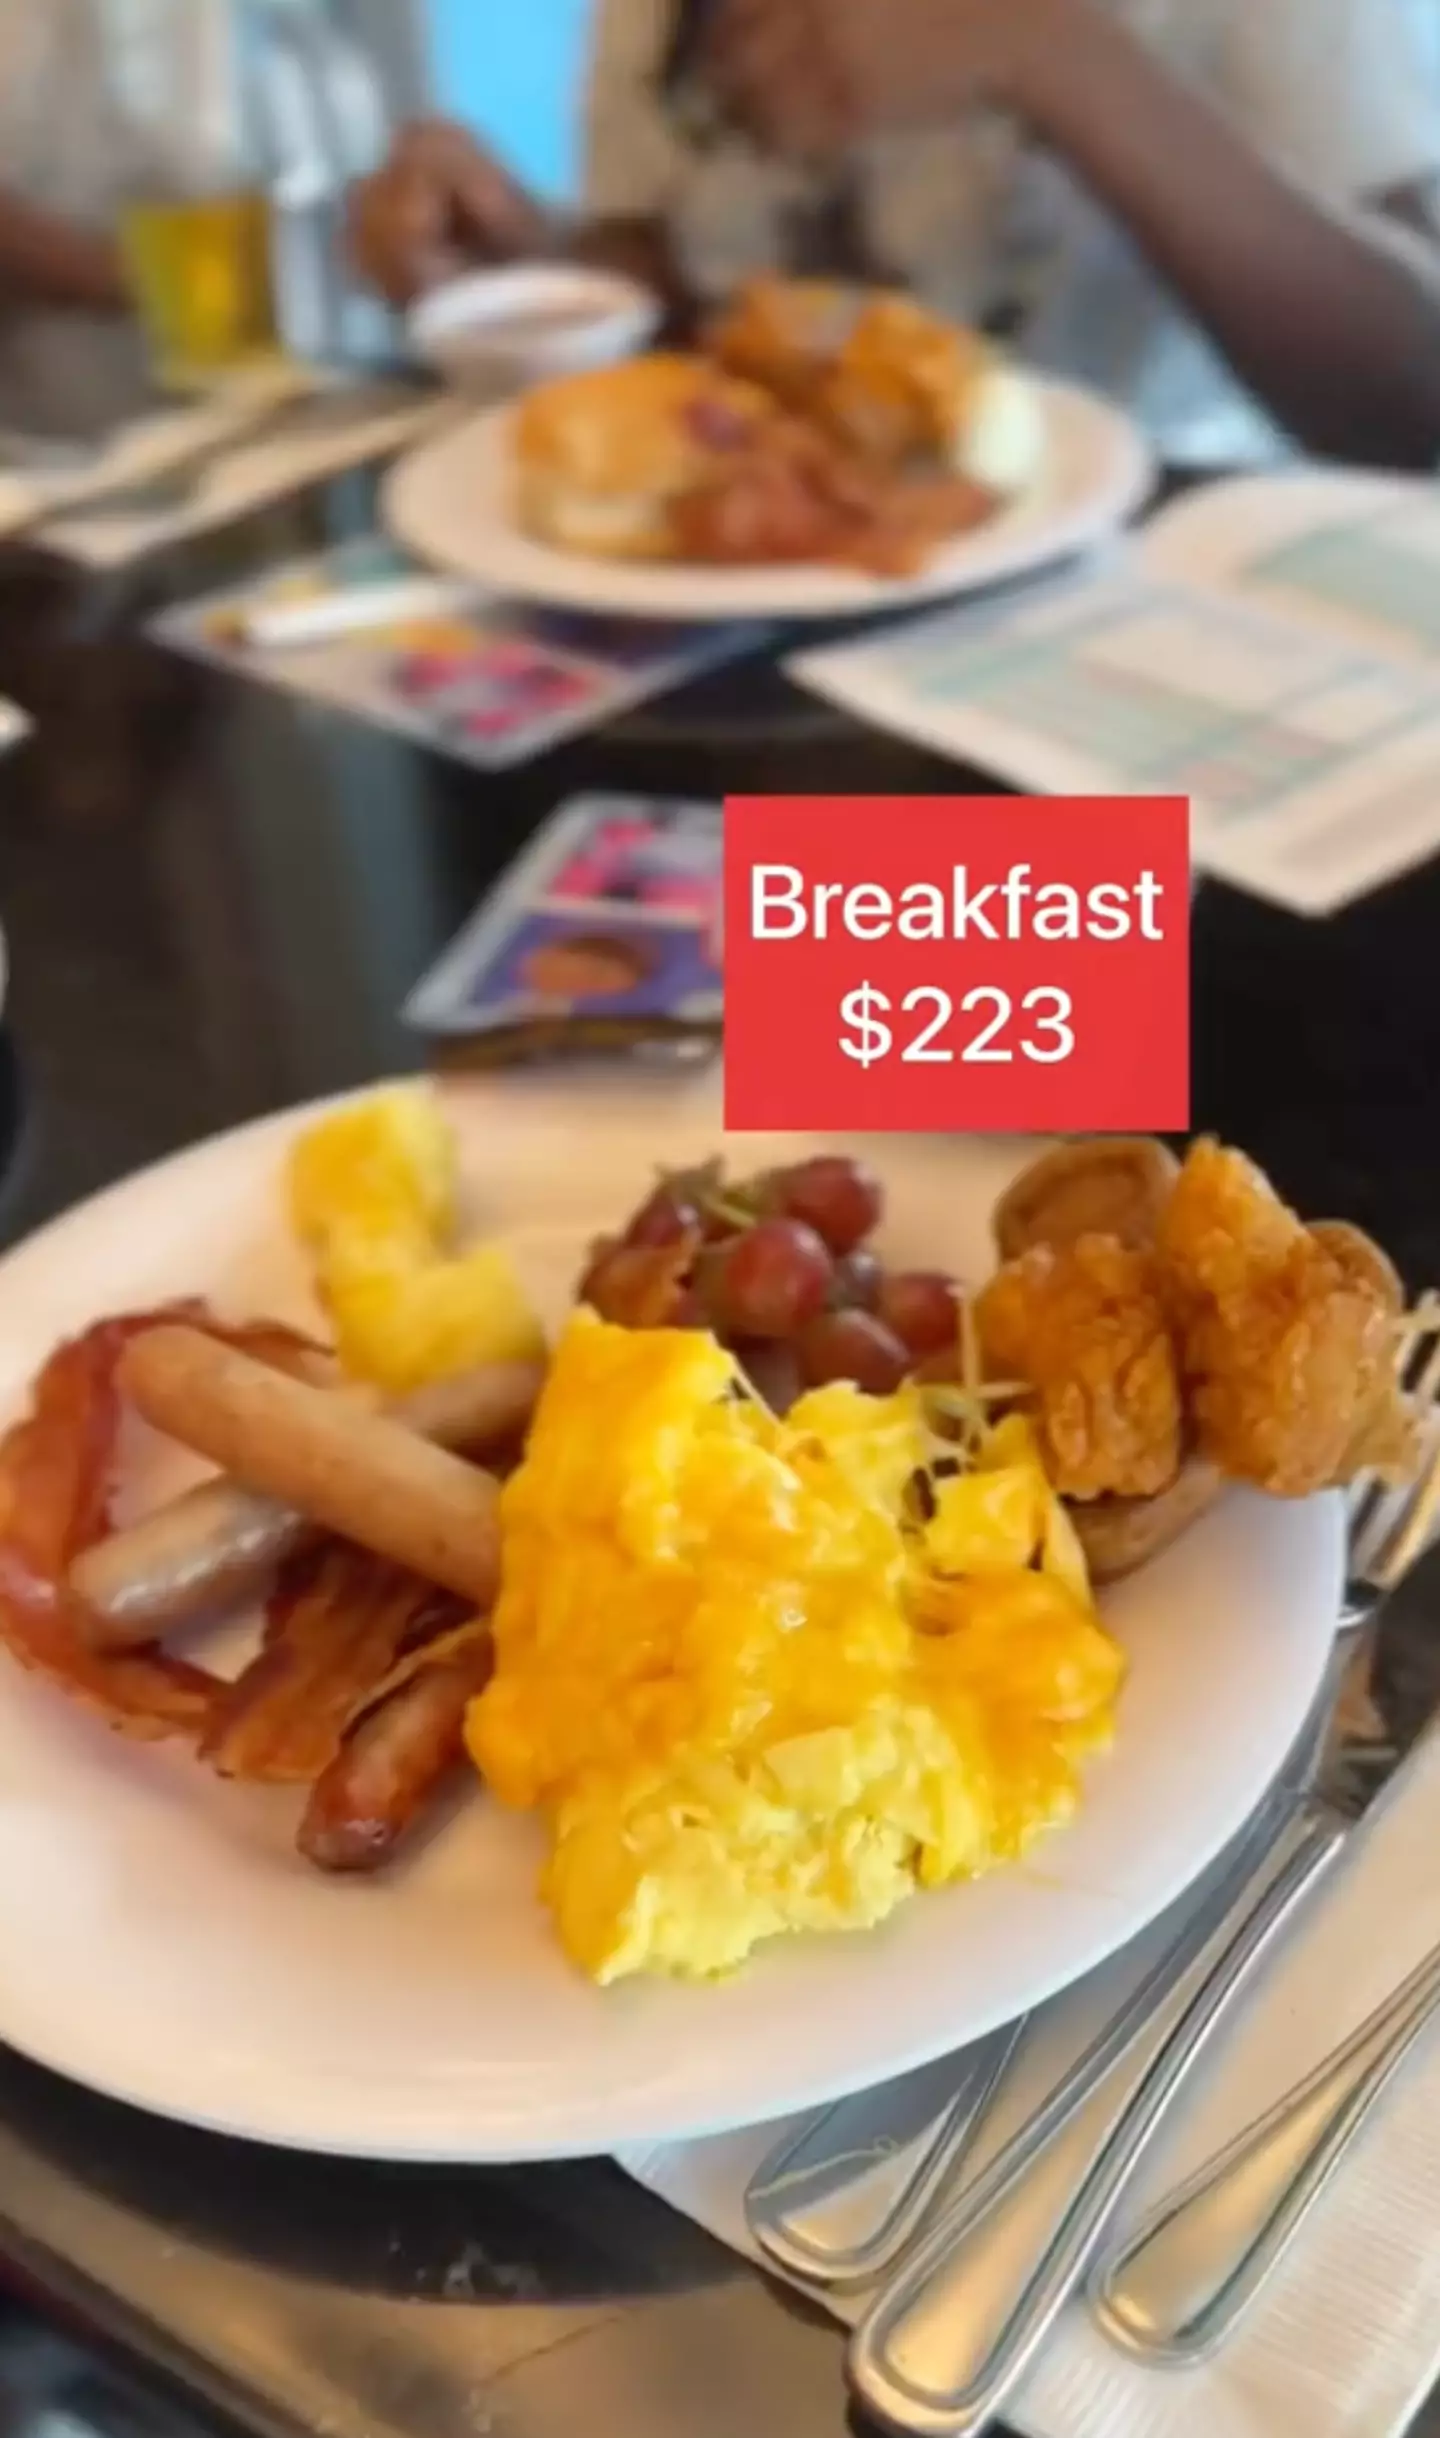 A 'mediocre' breakfast set Summer back over $200.